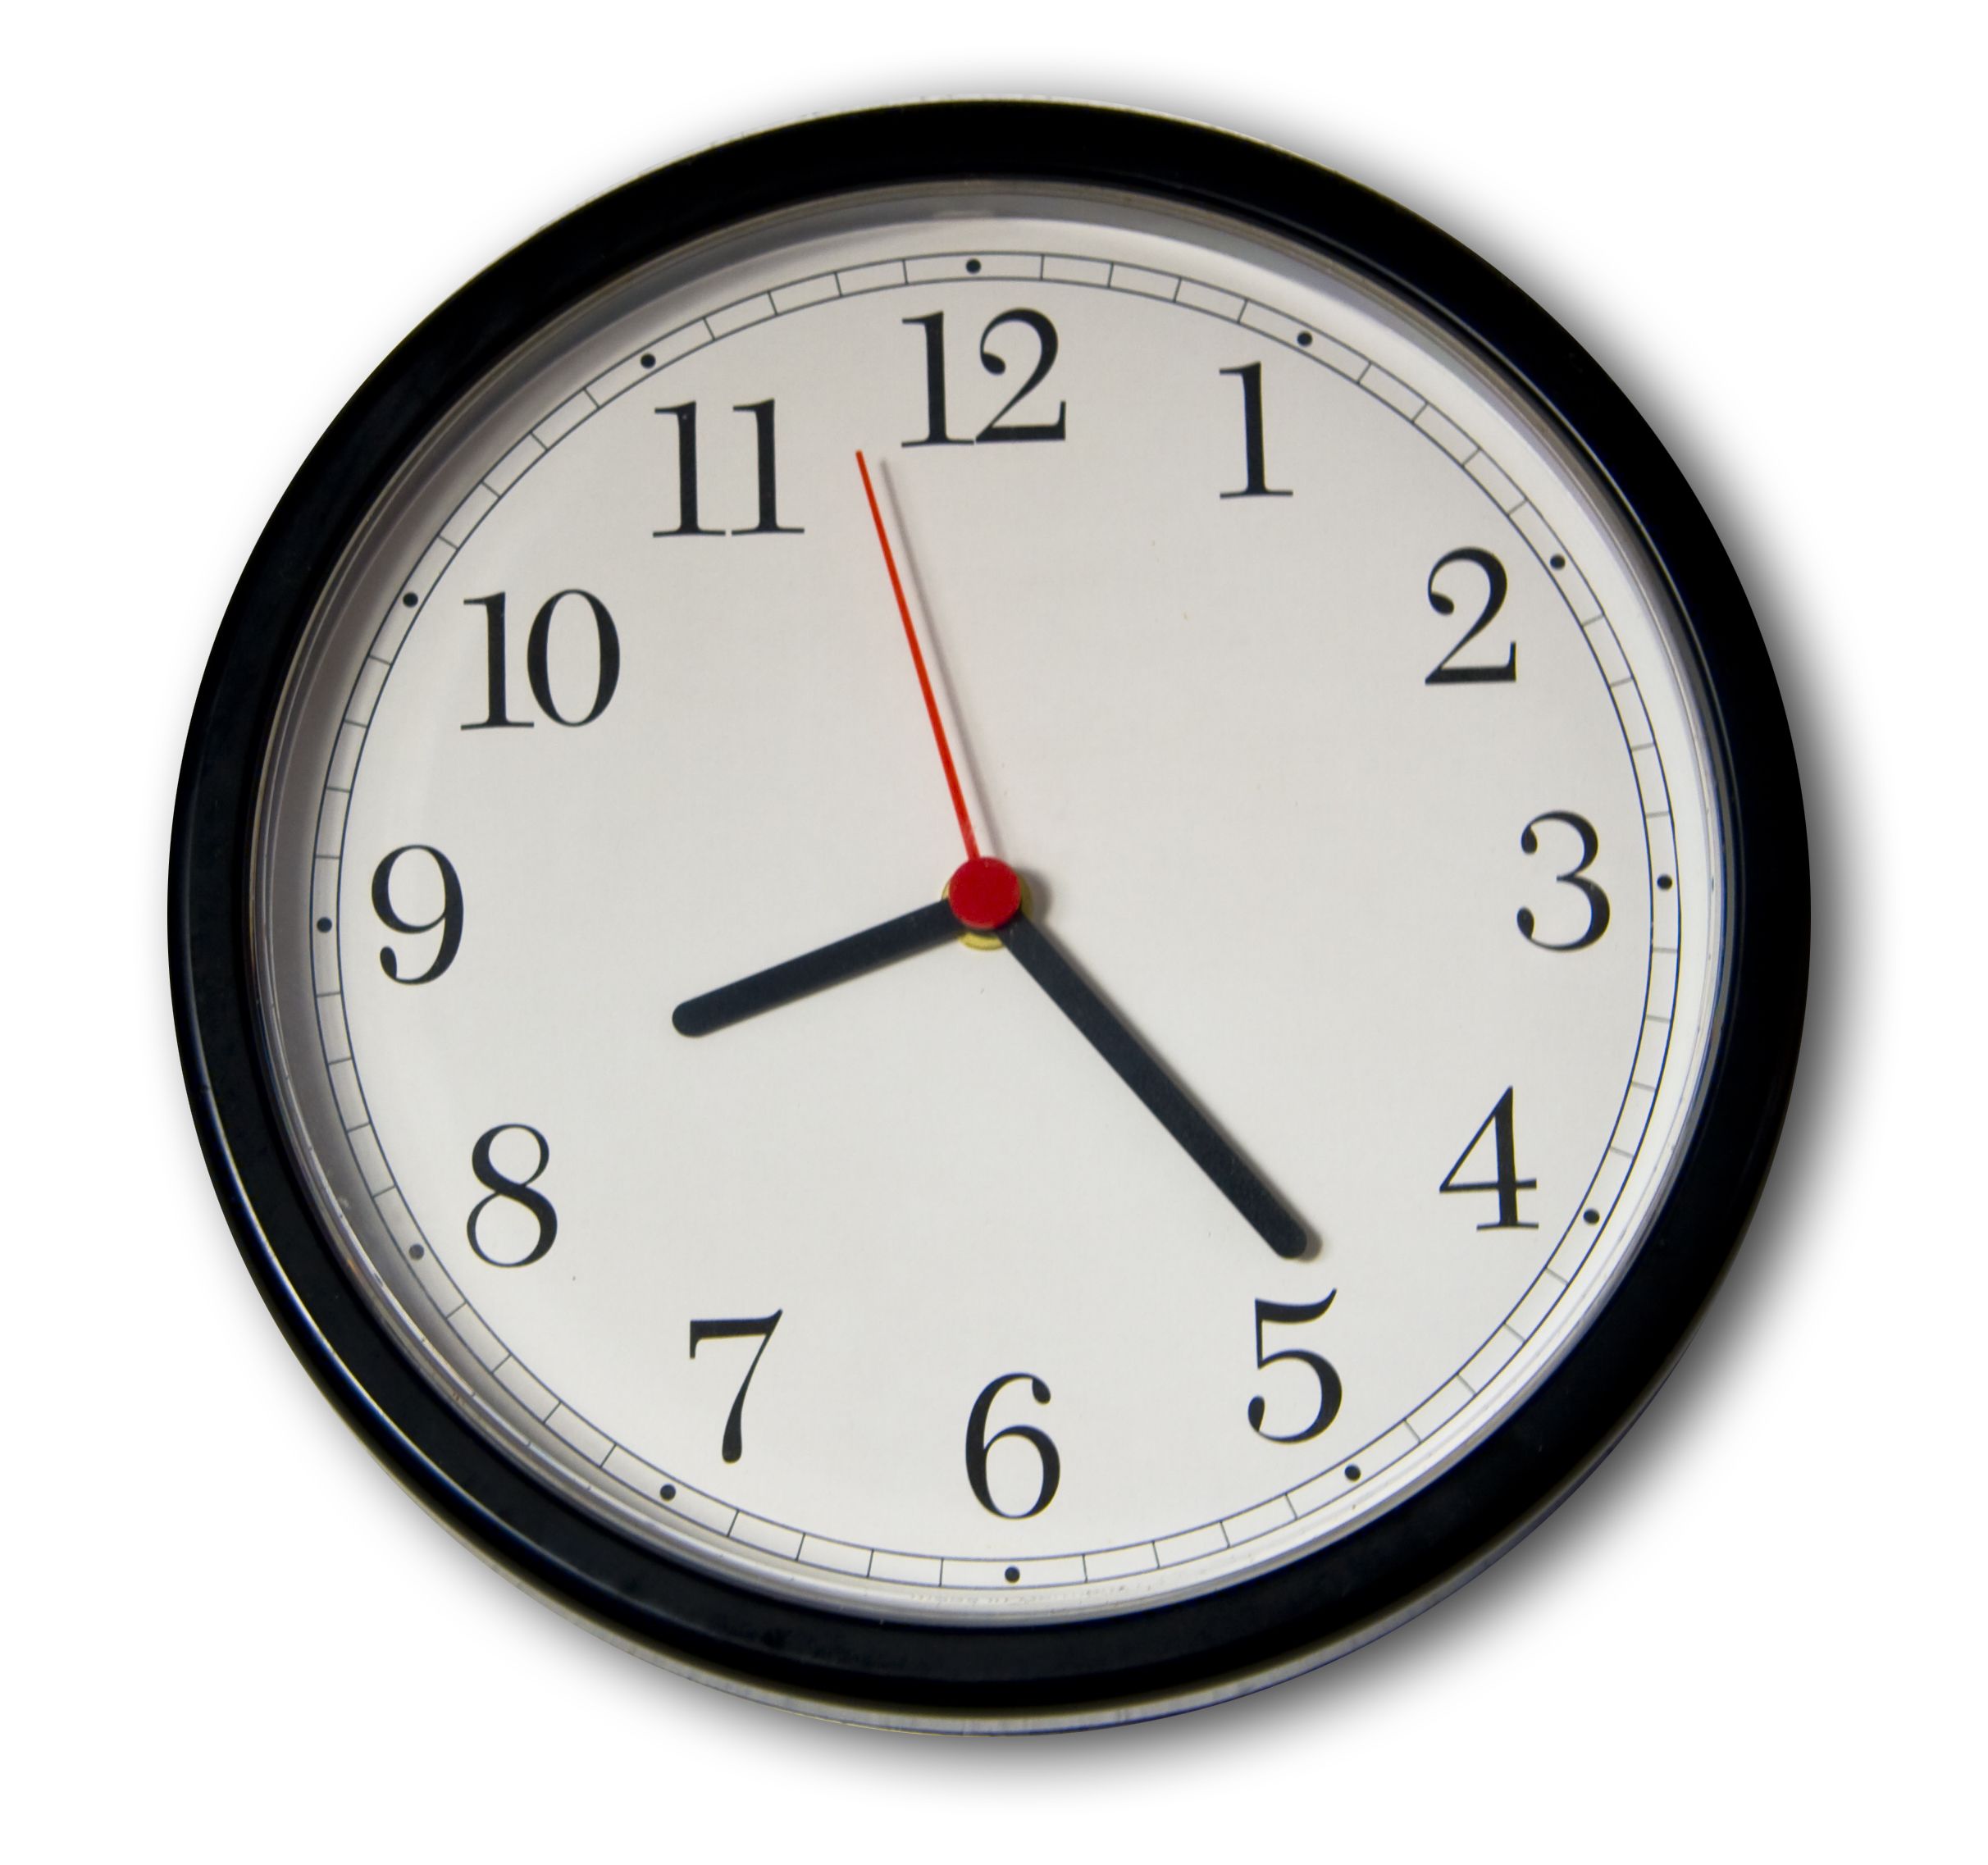 5 часов 15 минут 40 минут. Часы со стрелками. Часы 8 часов. Изображение часов. Часы со стрелкой.